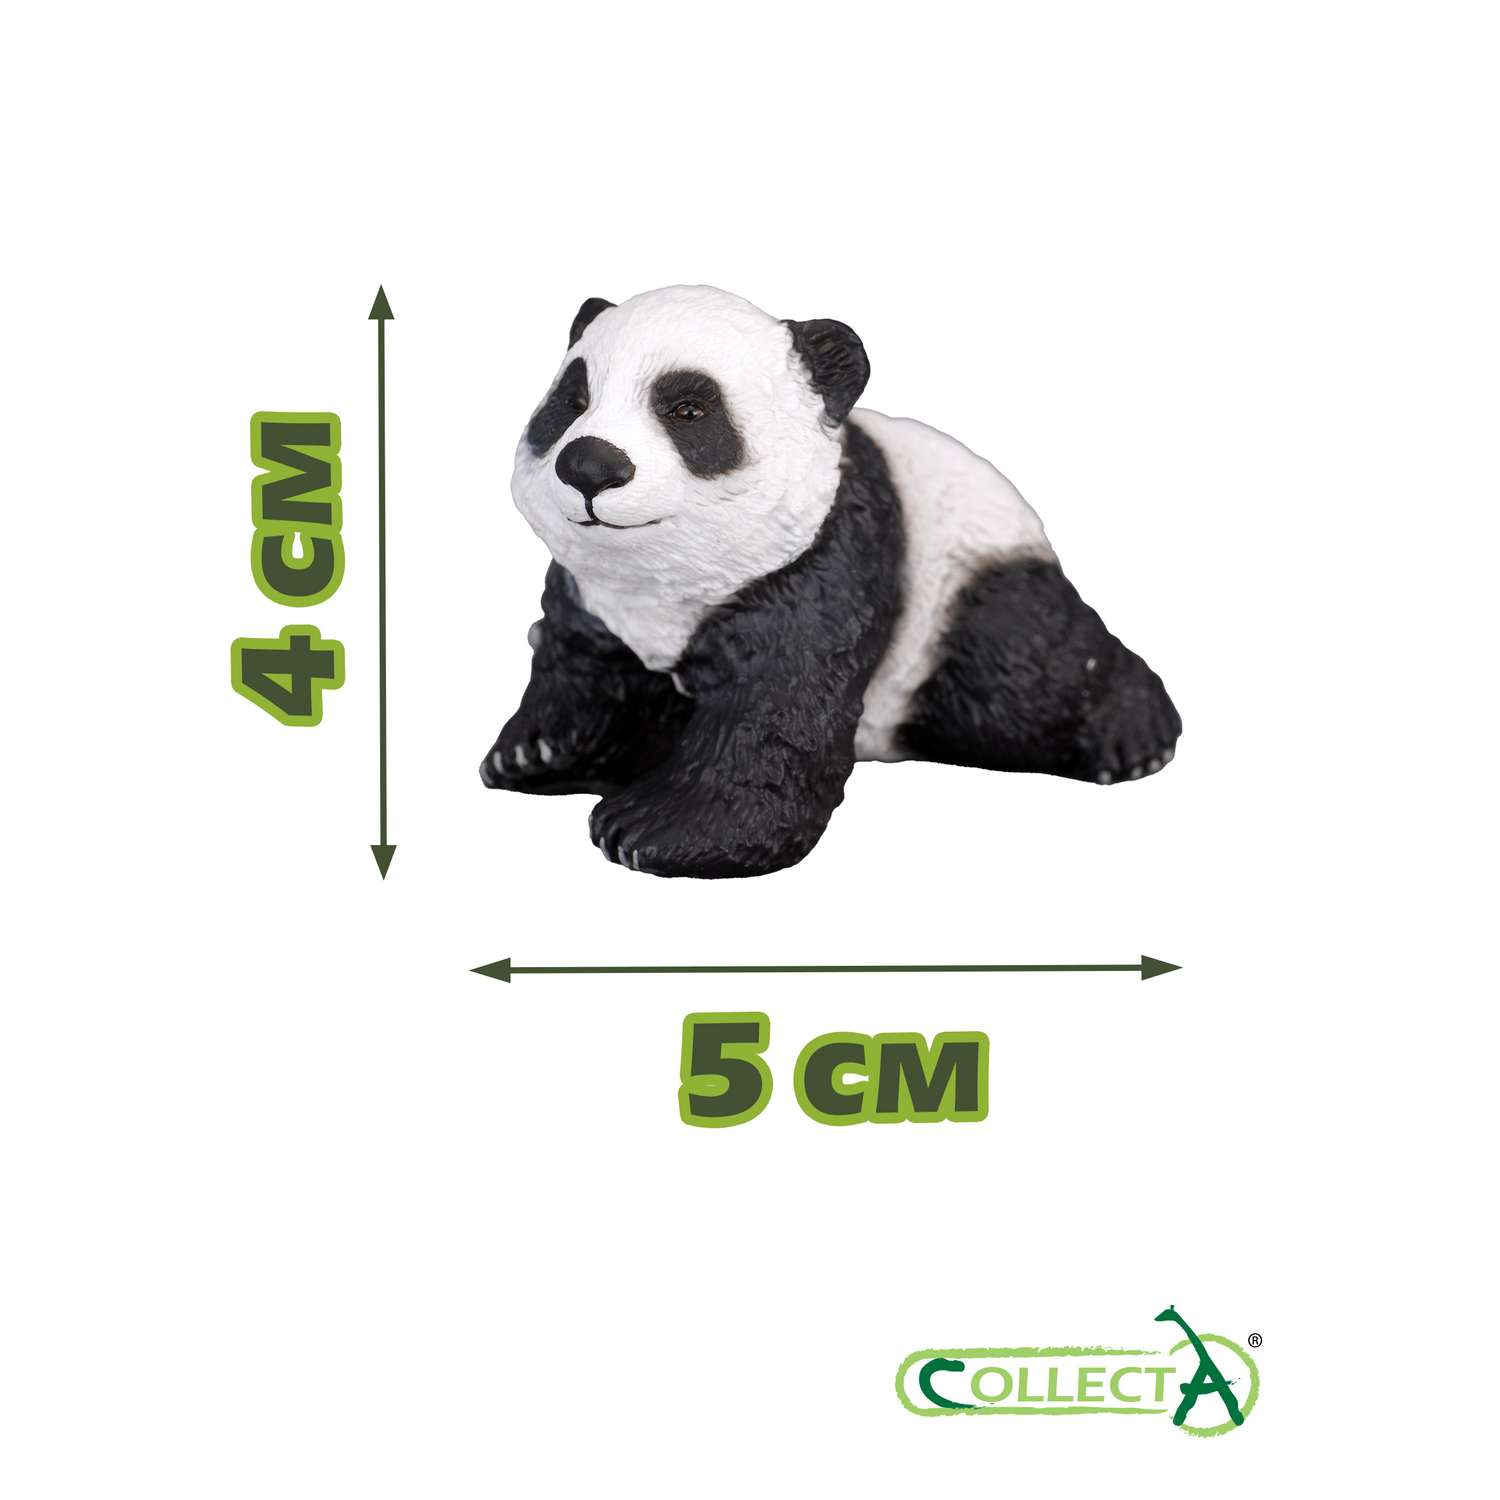 Фигурка животного Collecta Детёныш панды сидящий - фото 2